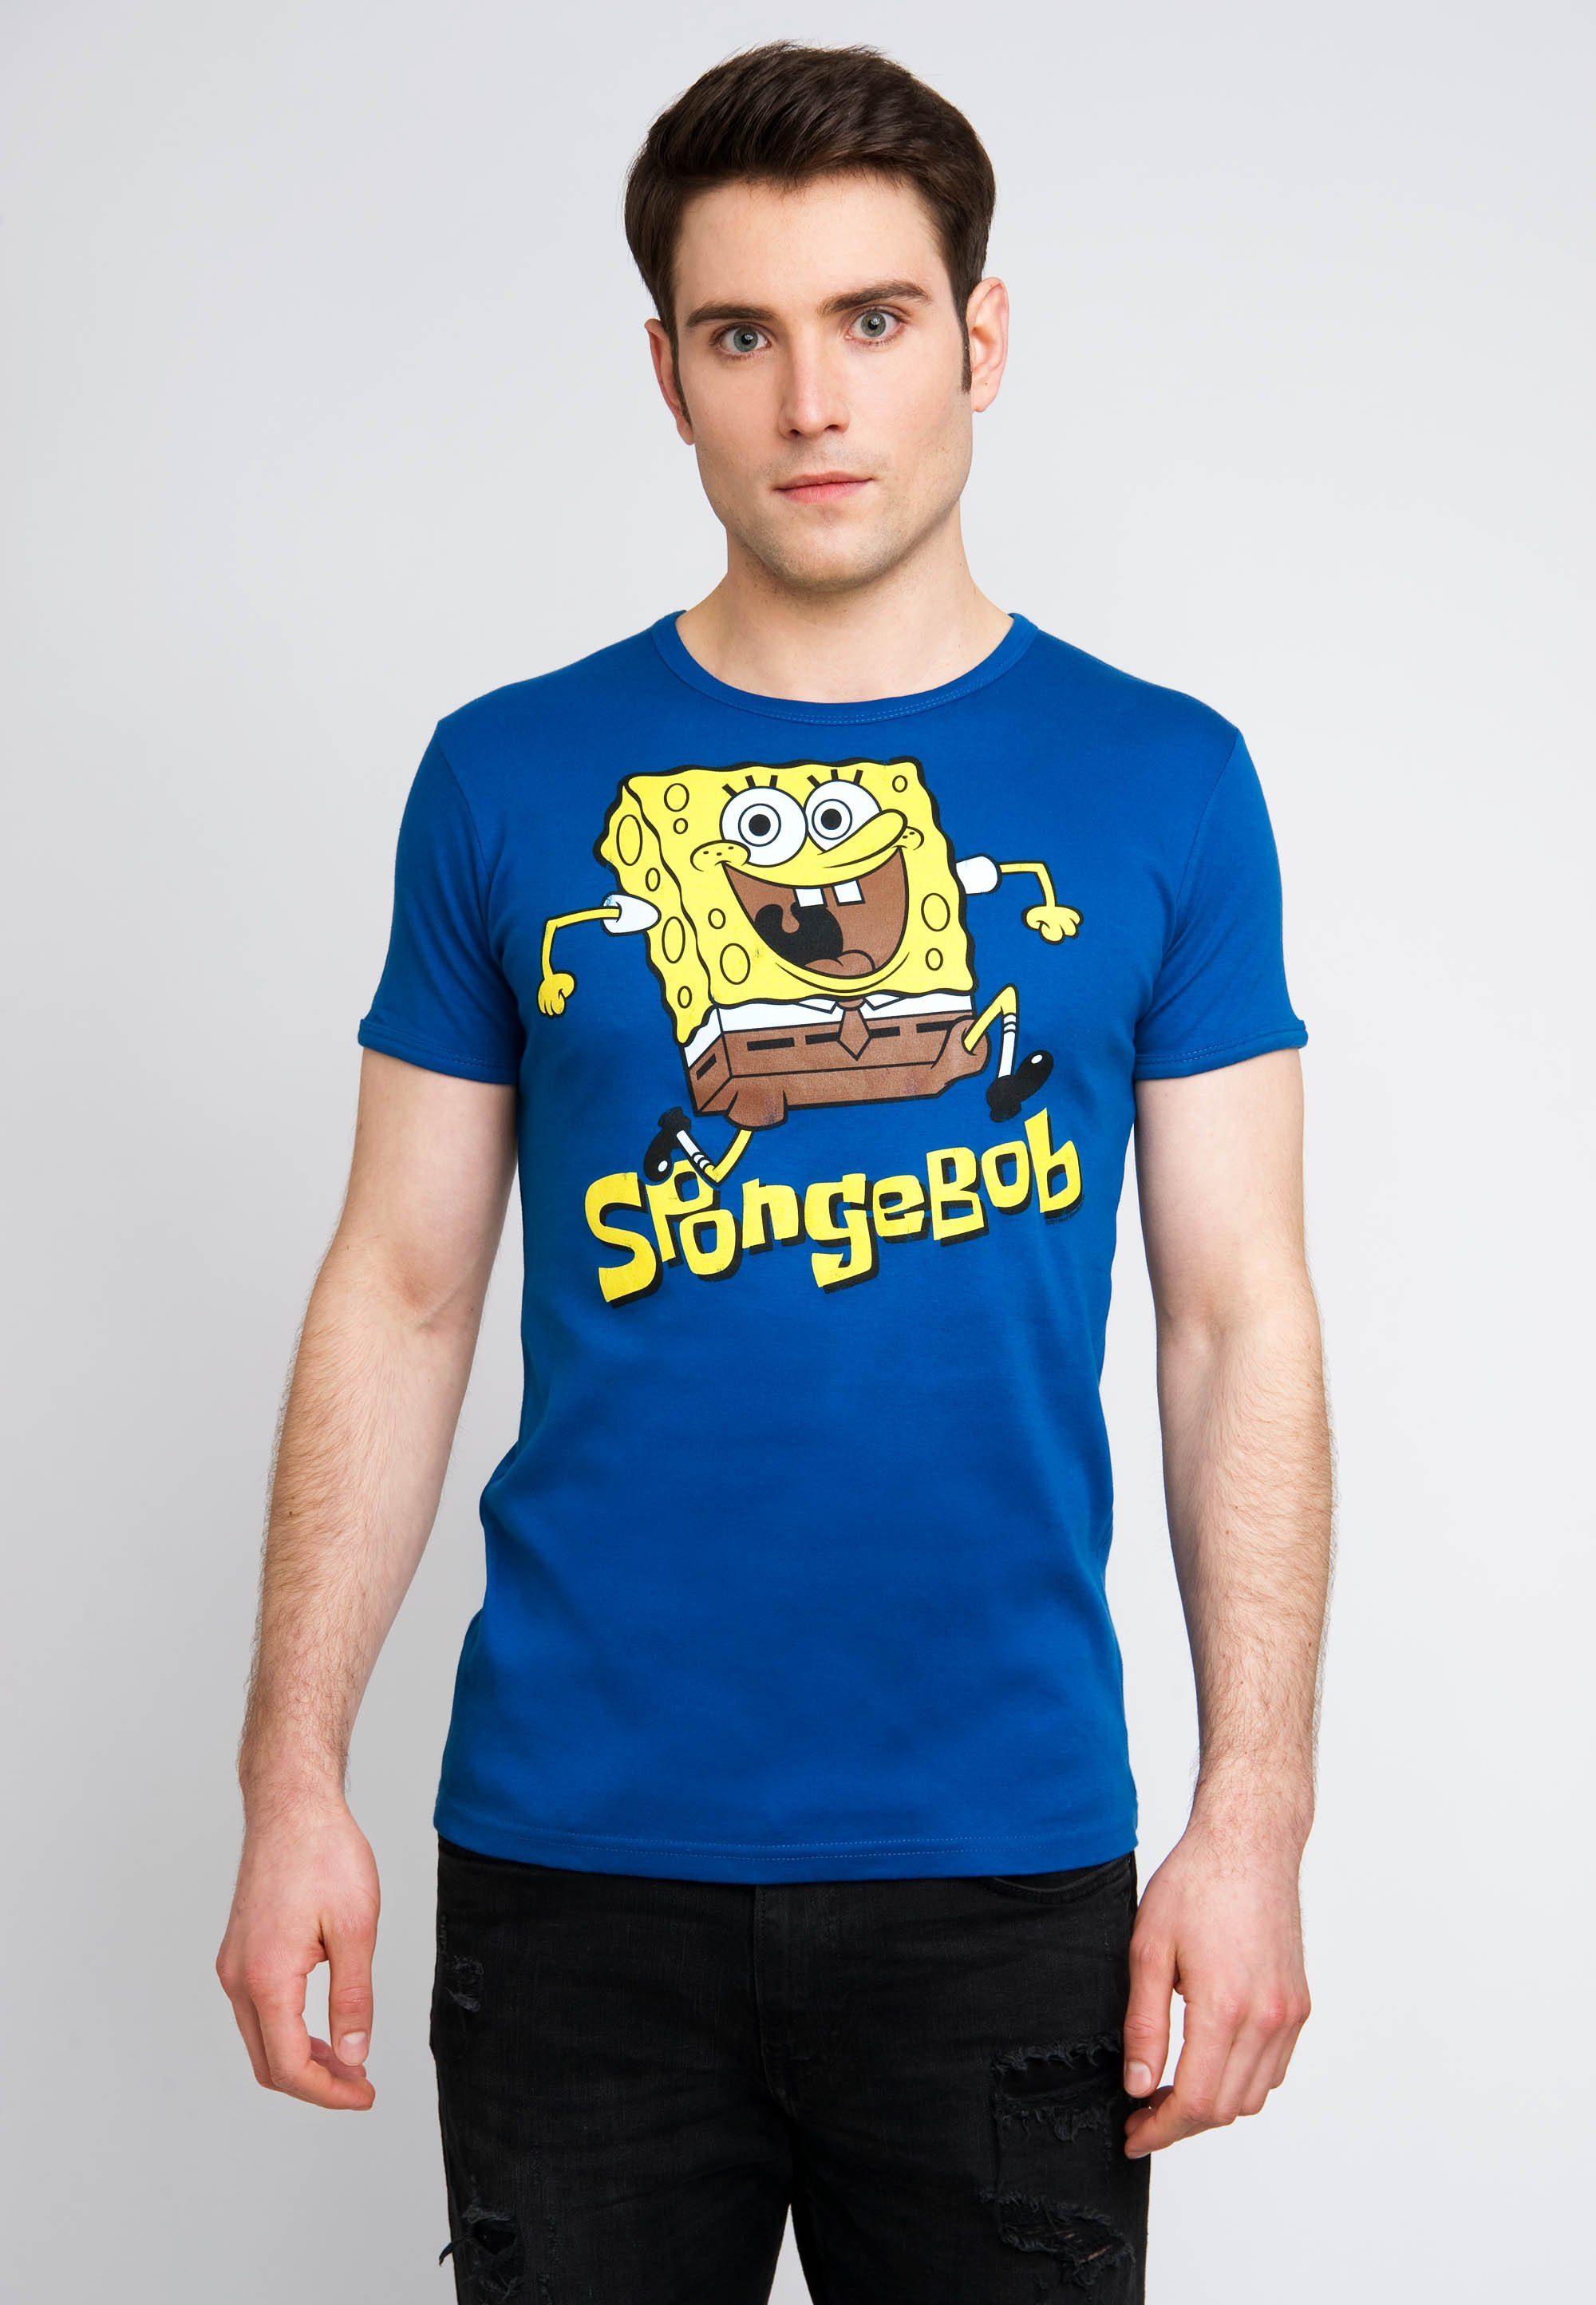 Jumping kurzen - Ärmeln T-Shirt und Spongebob-Print Spongebob LOGOSHIRT mit